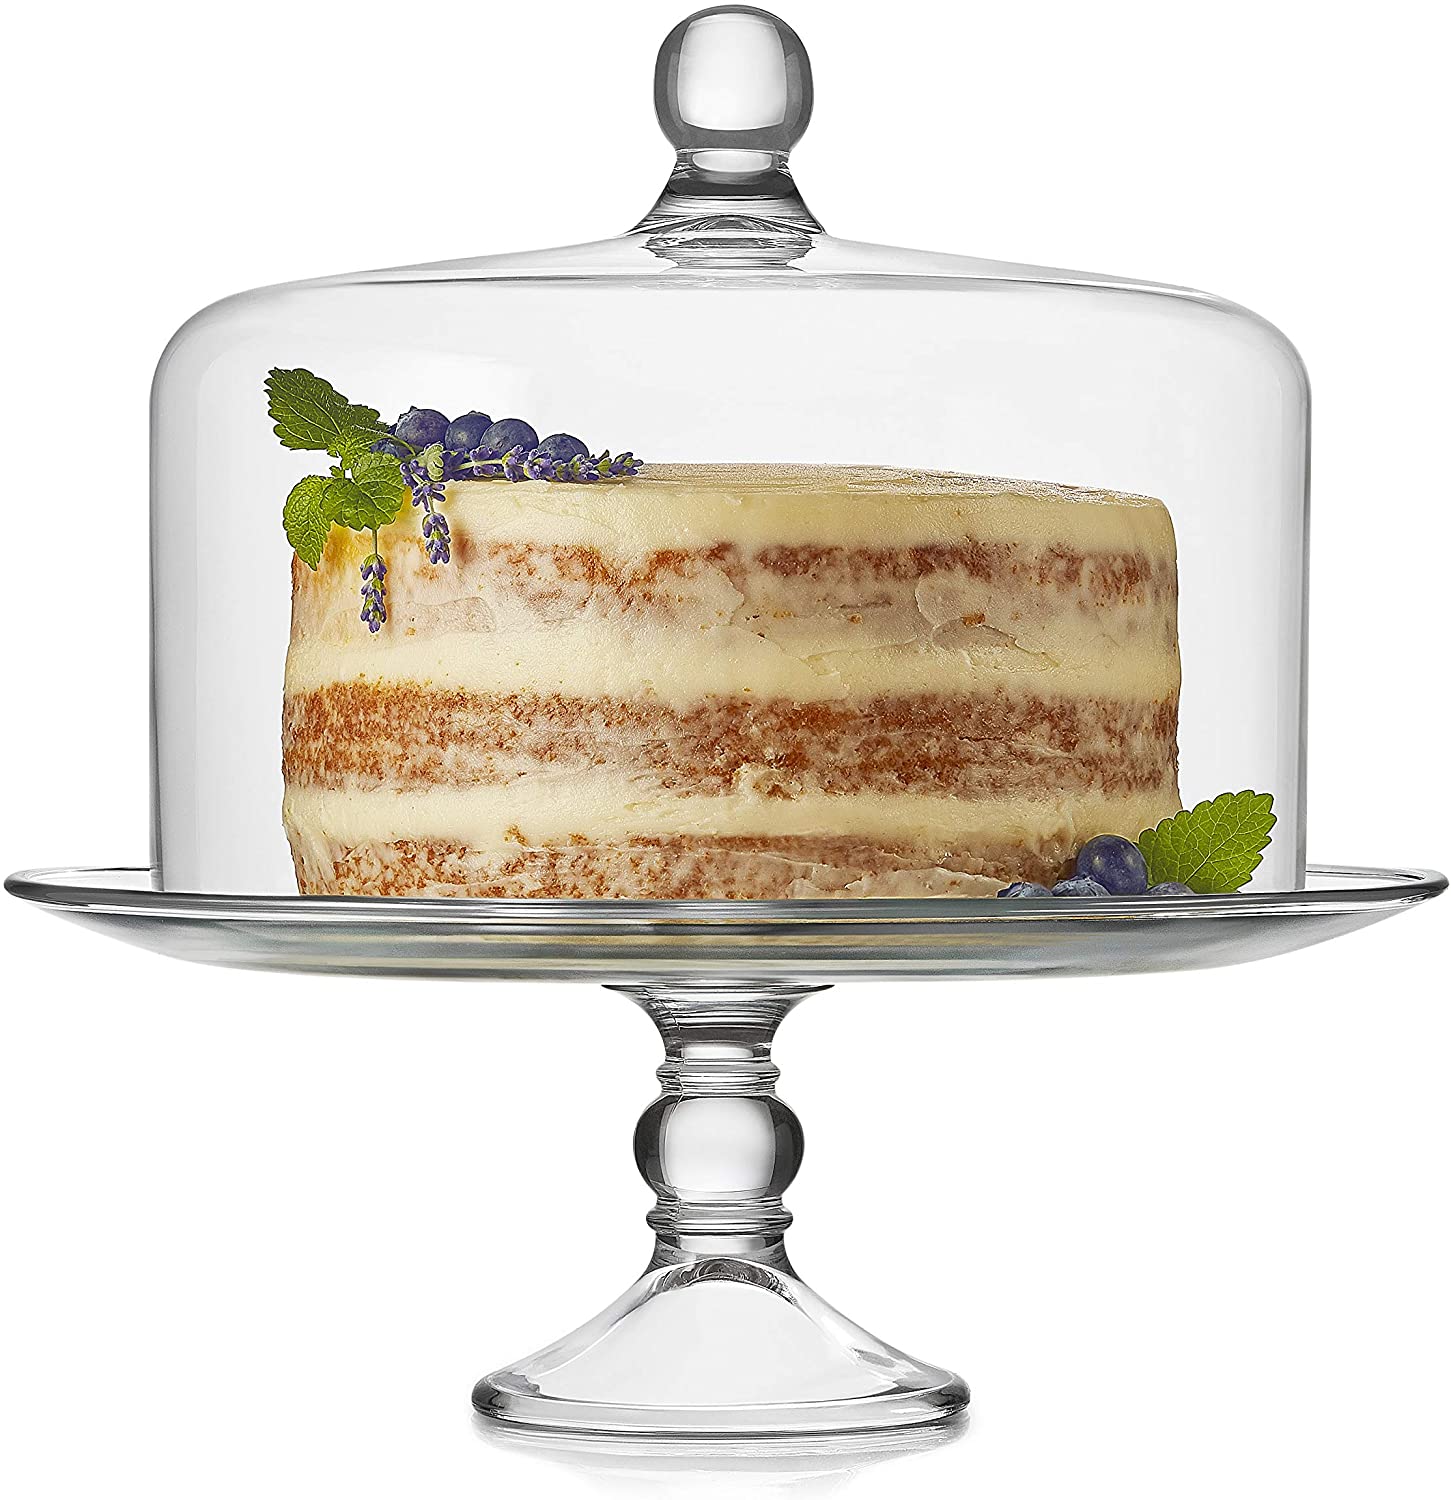 The Upper Kitchen Cake Spinner – Best Cake Spinner Turntable for Decorating, Tall Spinning Cake Stand for Decorating, Rotating Cake Stand, Small